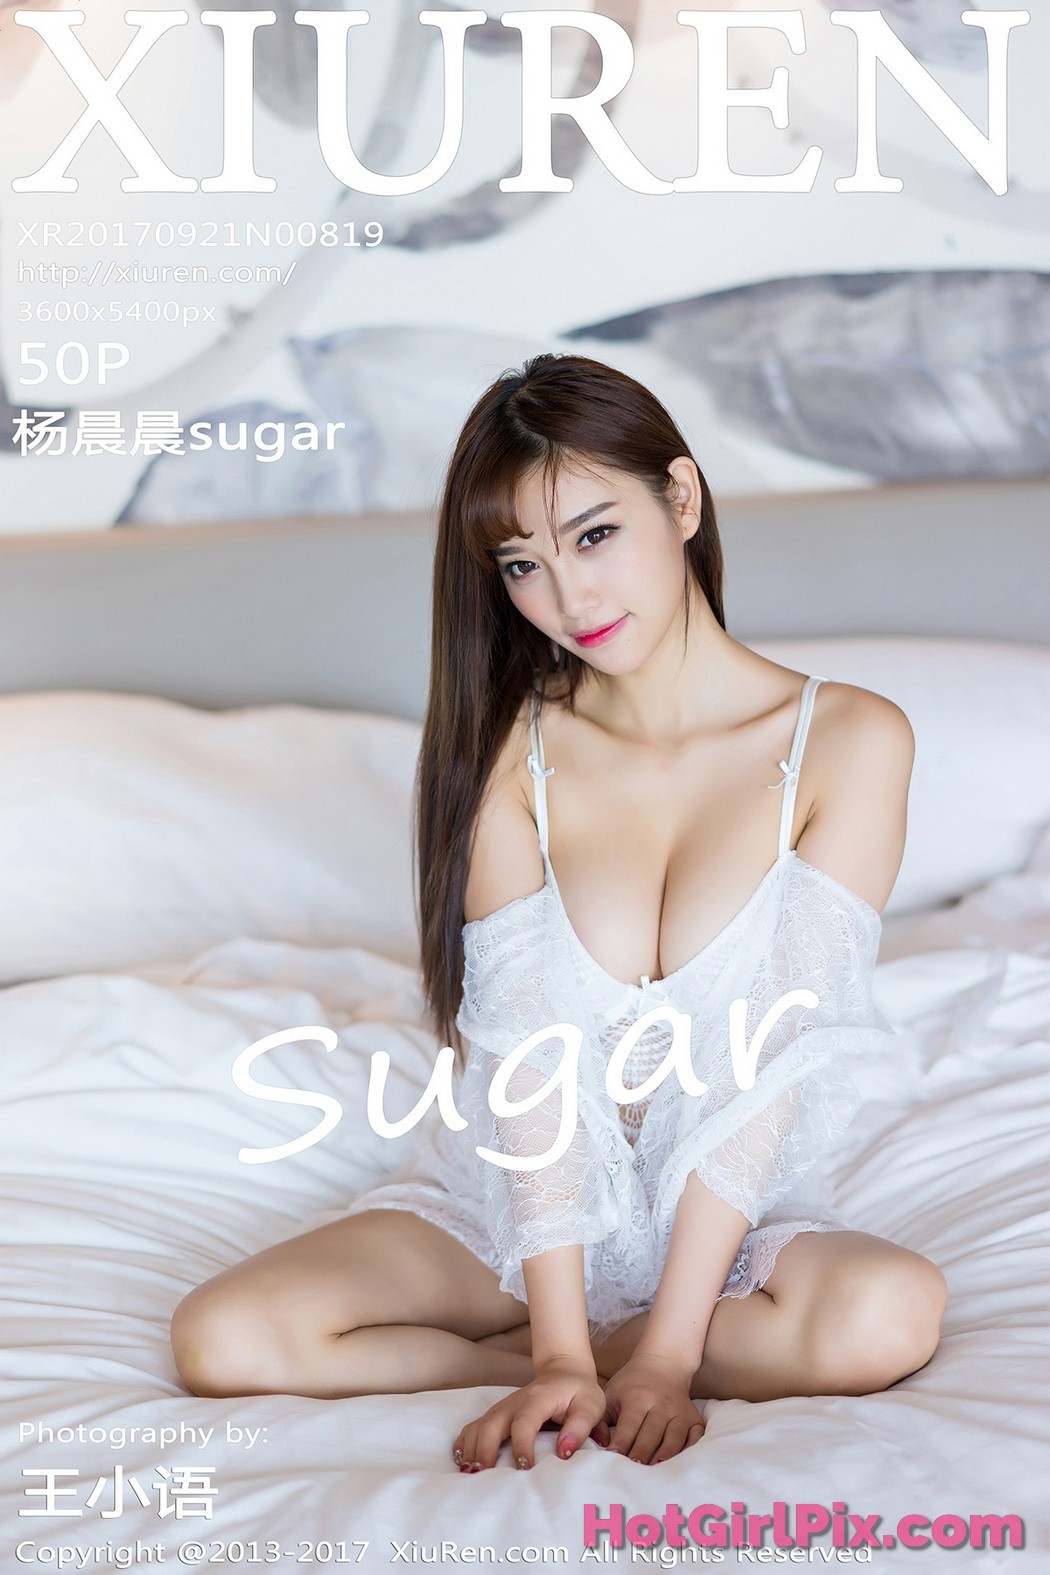 [XIUREN] No.819 Yang Chen Chen 杨晨晨sugar Cover Photo